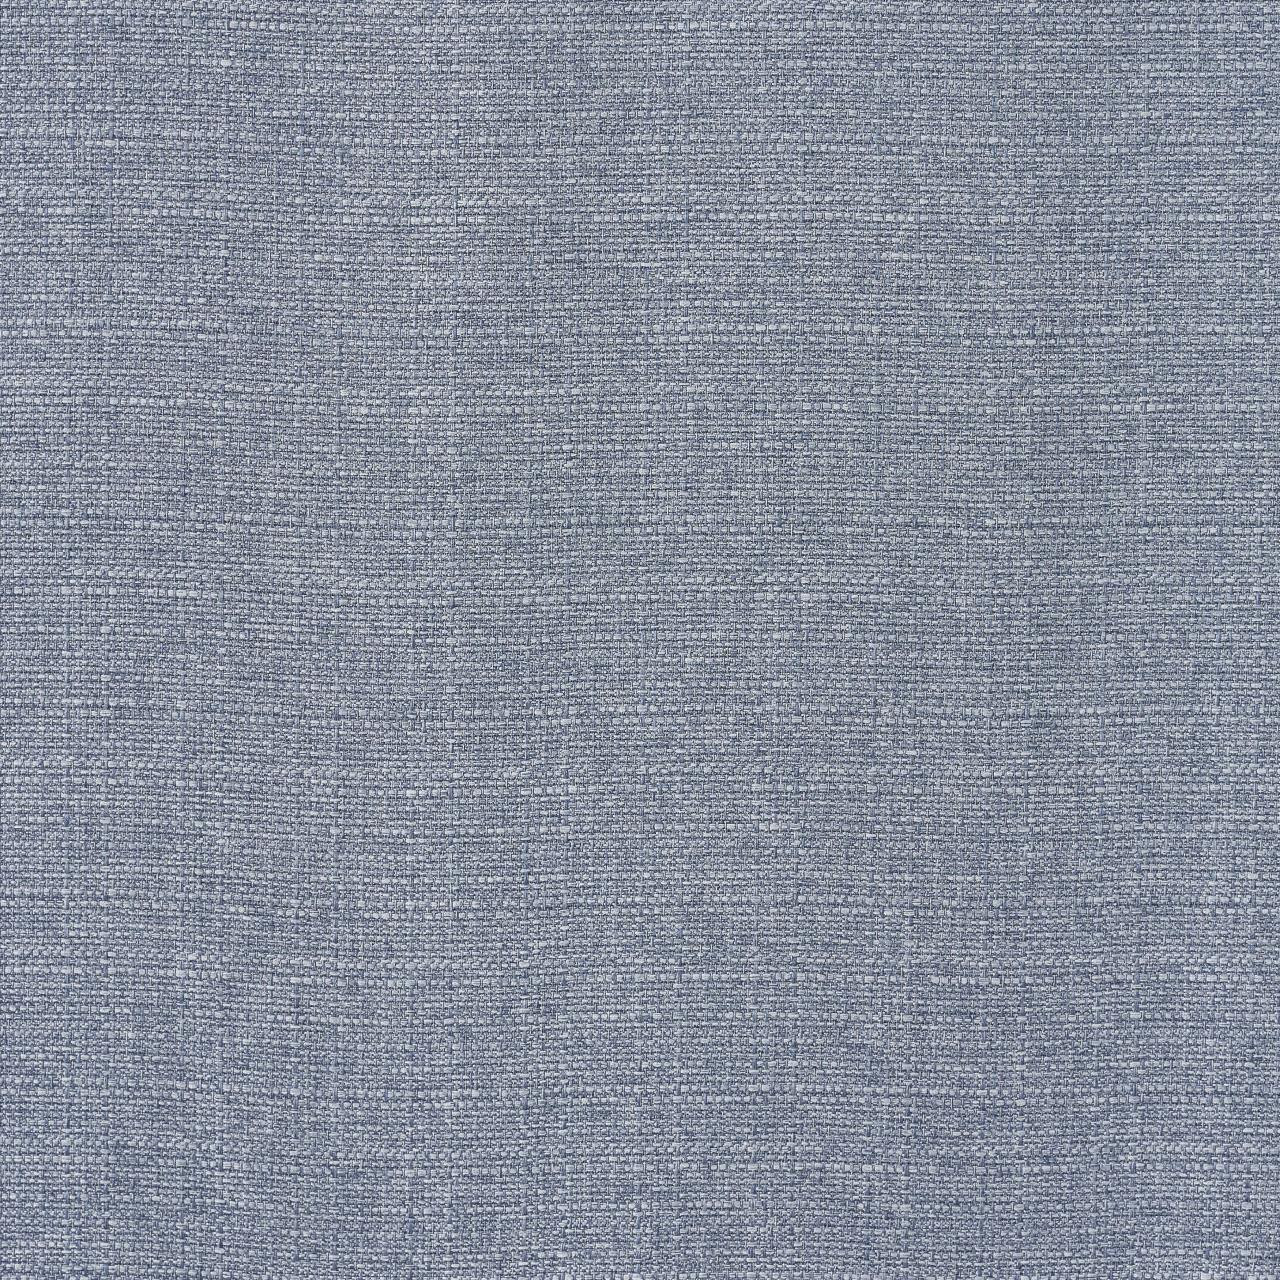 Aurora Blue Curtain Pair - 193842109458